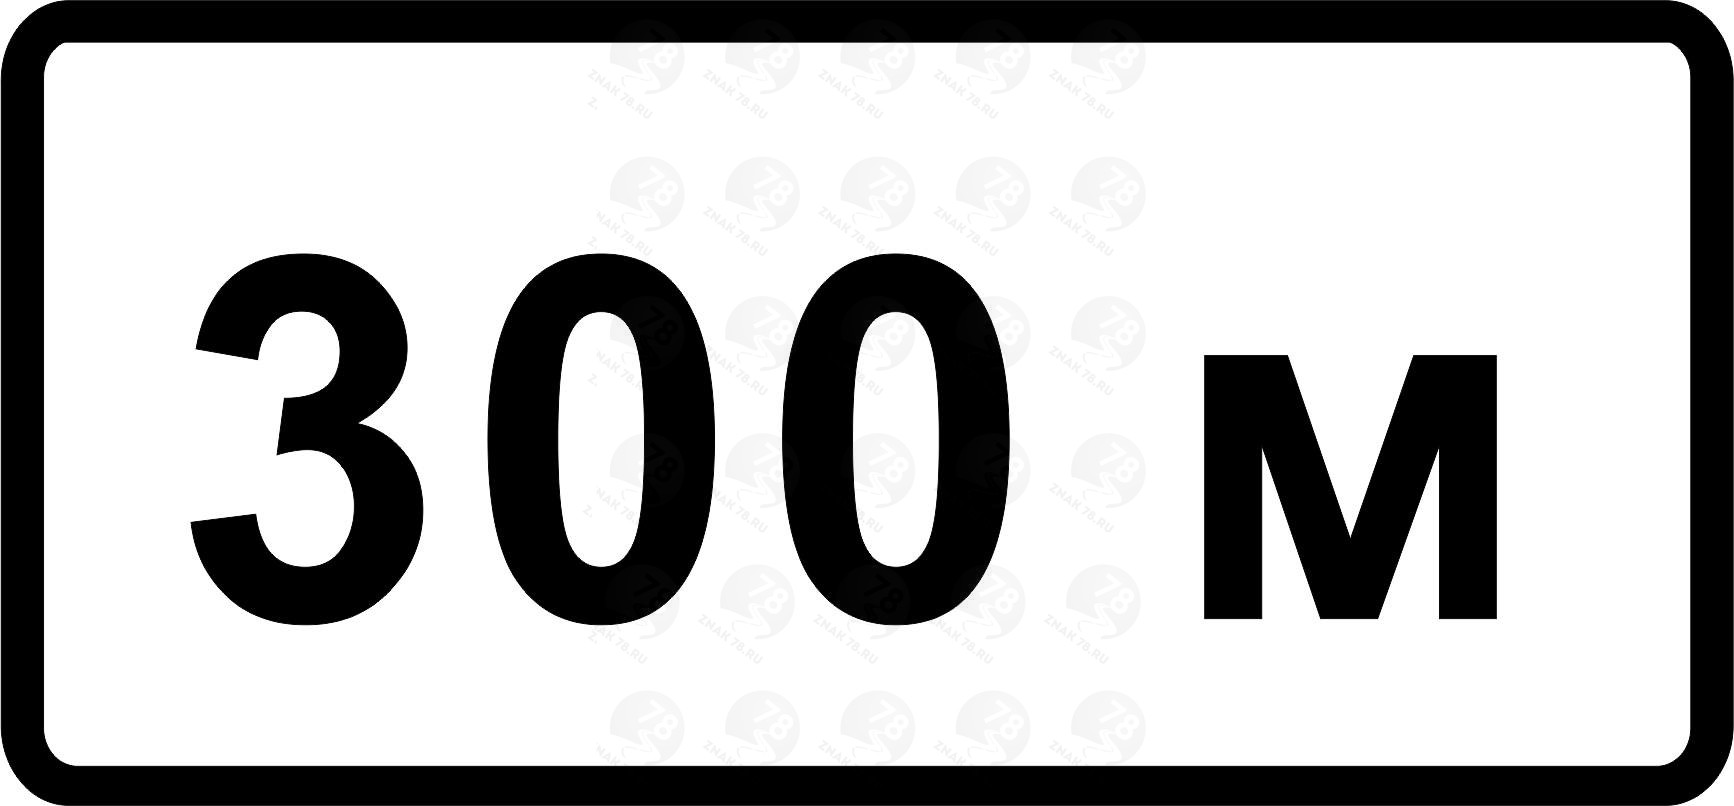 30 1.3. Дорожный знак 8.1.1 100 м. Дорожный знак 8.2.1 150 м. Знак 8.1.1 250 метров. Знак 8.2.1 100 м.